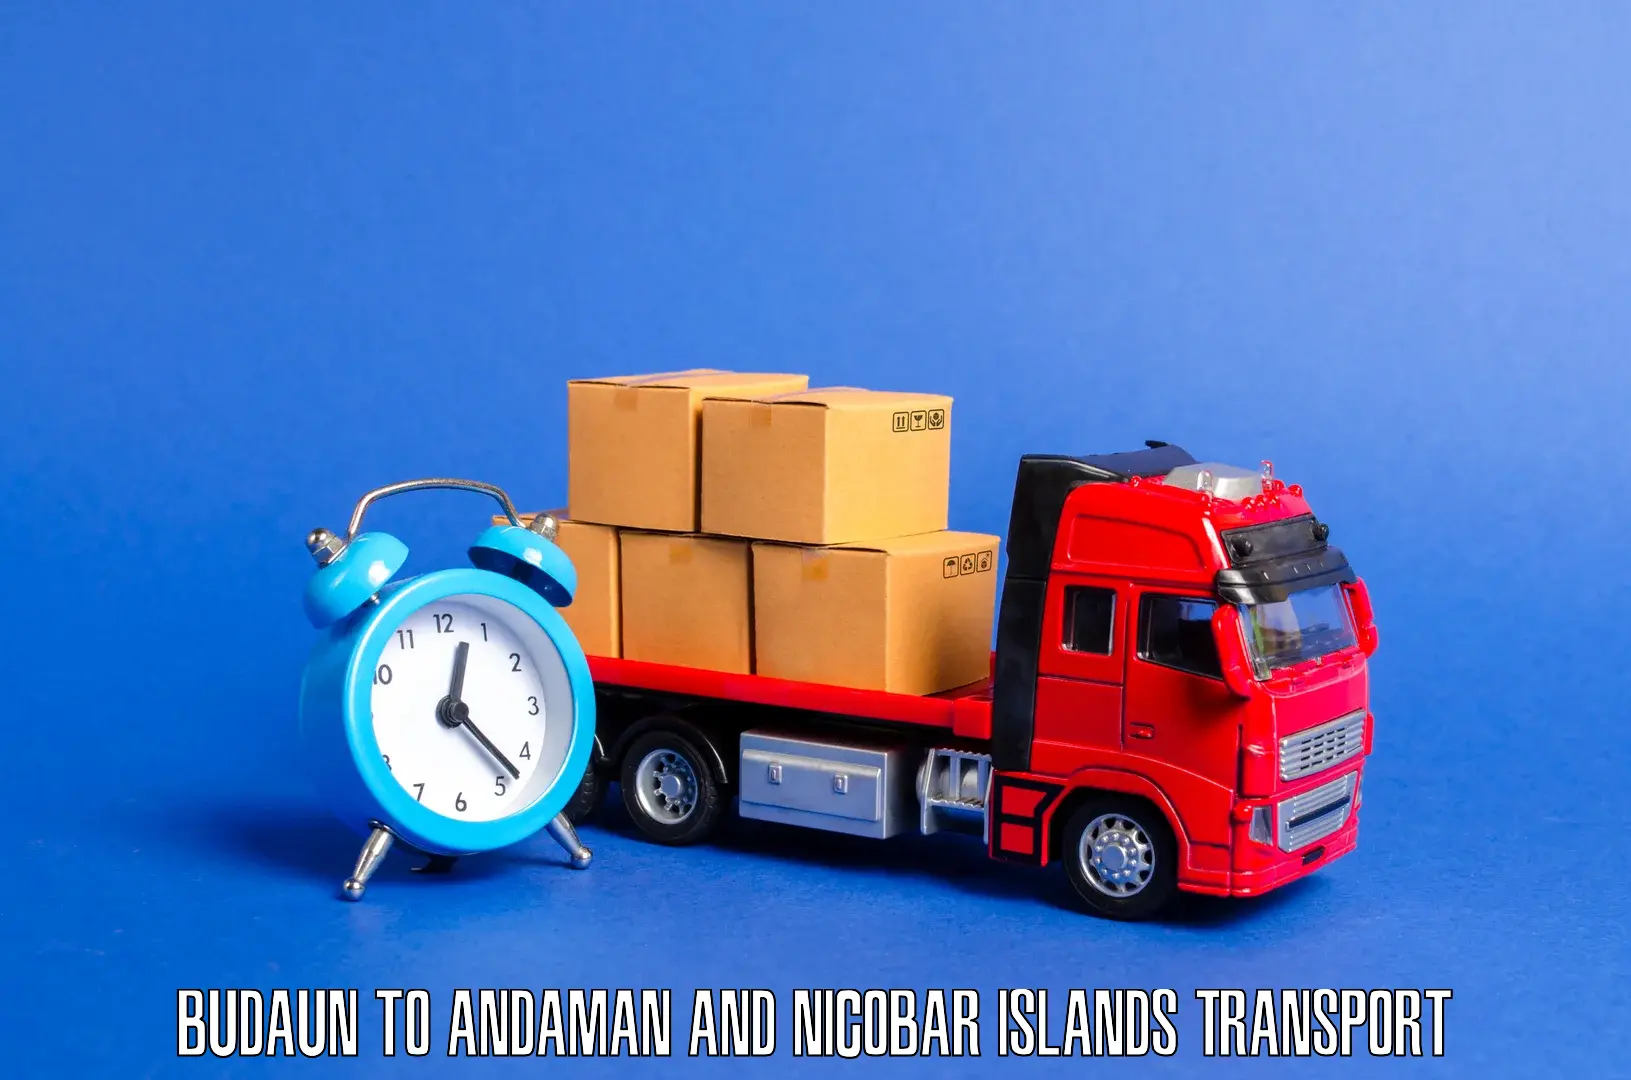 Online transport service Budaun to Andaman and Nicobar Islands